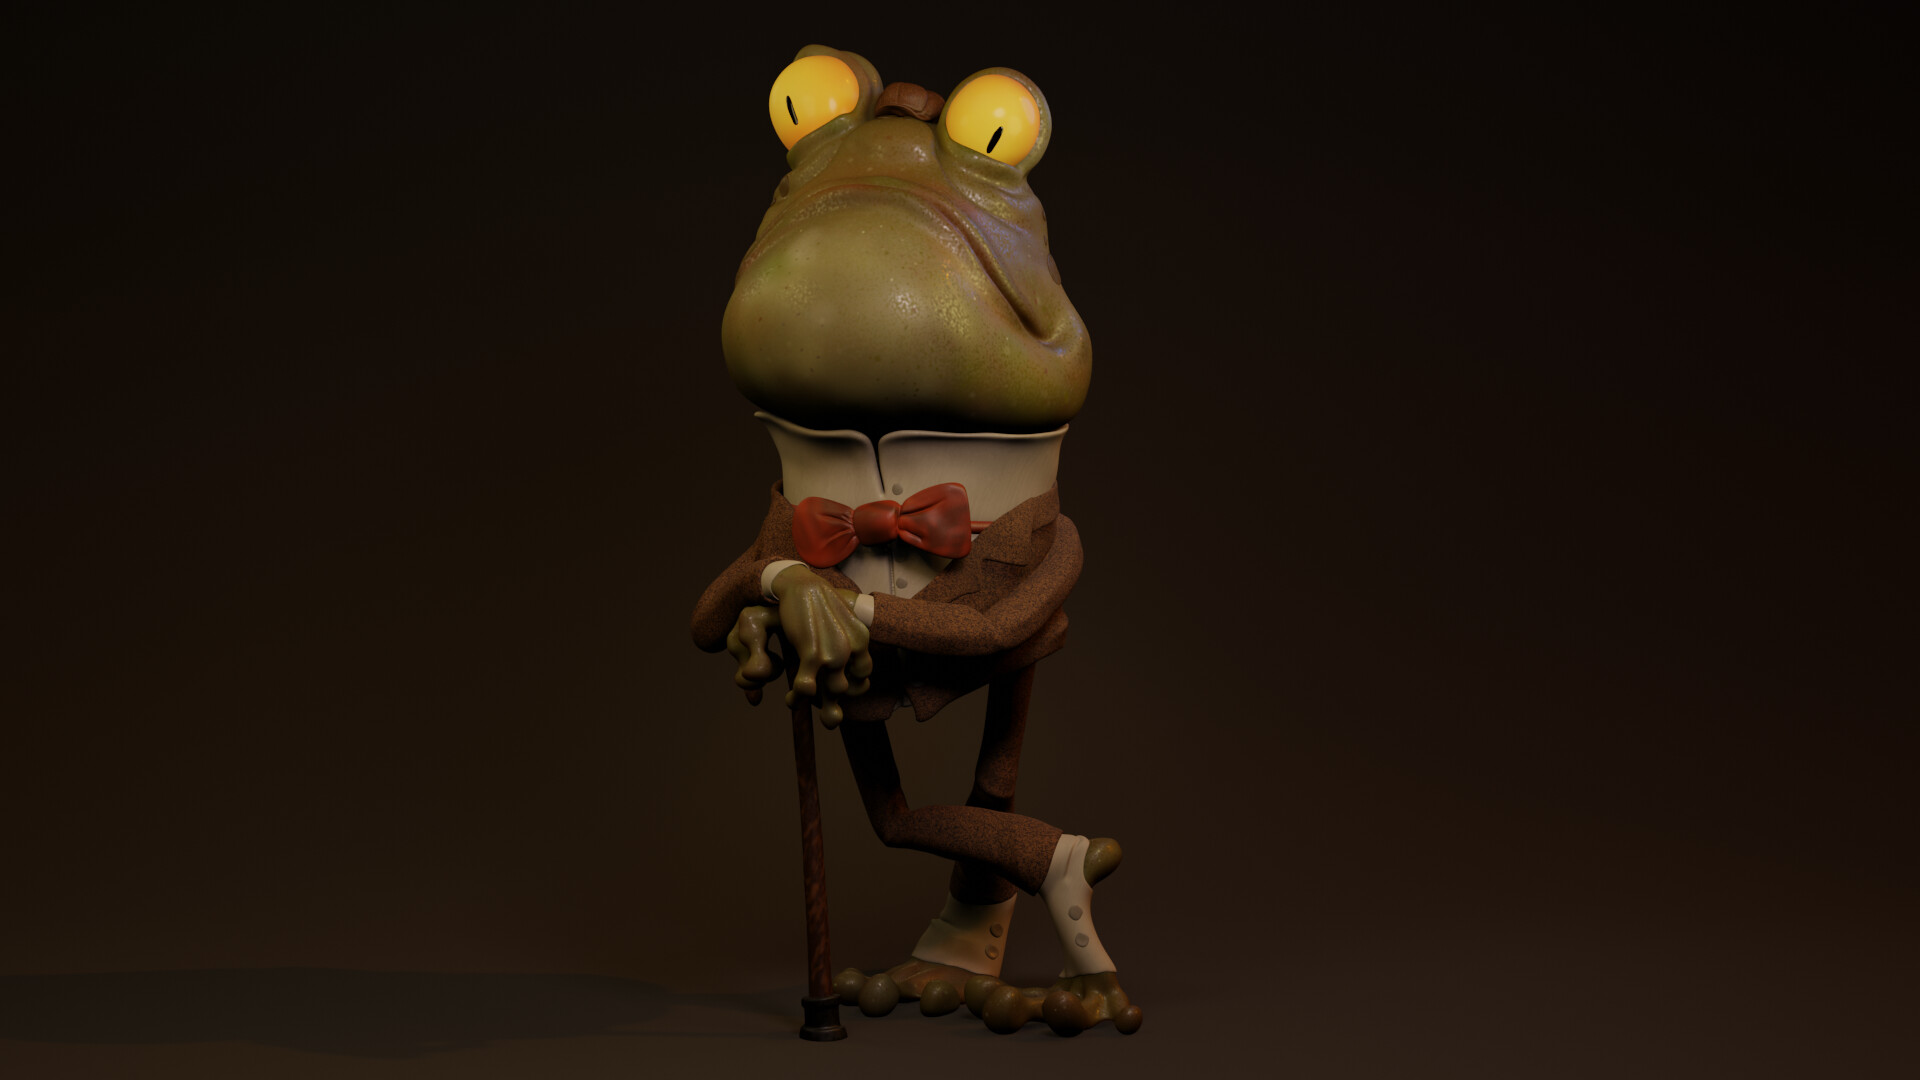 Frog gentleman 64X64 by SuchANameS on DeviantArt